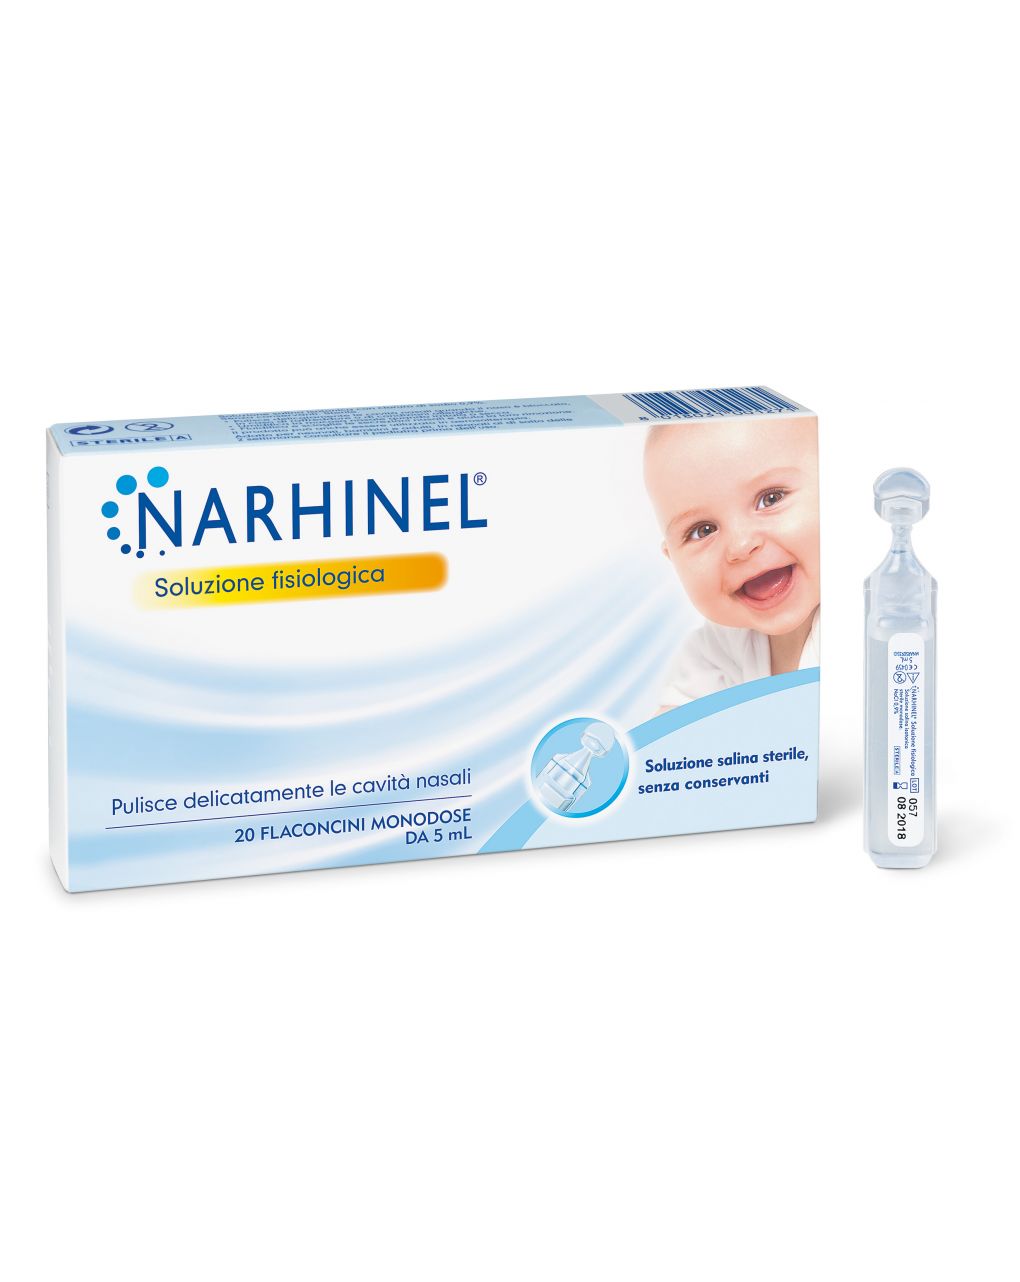 Narhinel - soluzione fisiologica salina isotonica - 20 flaconcini monodose x 5 ml